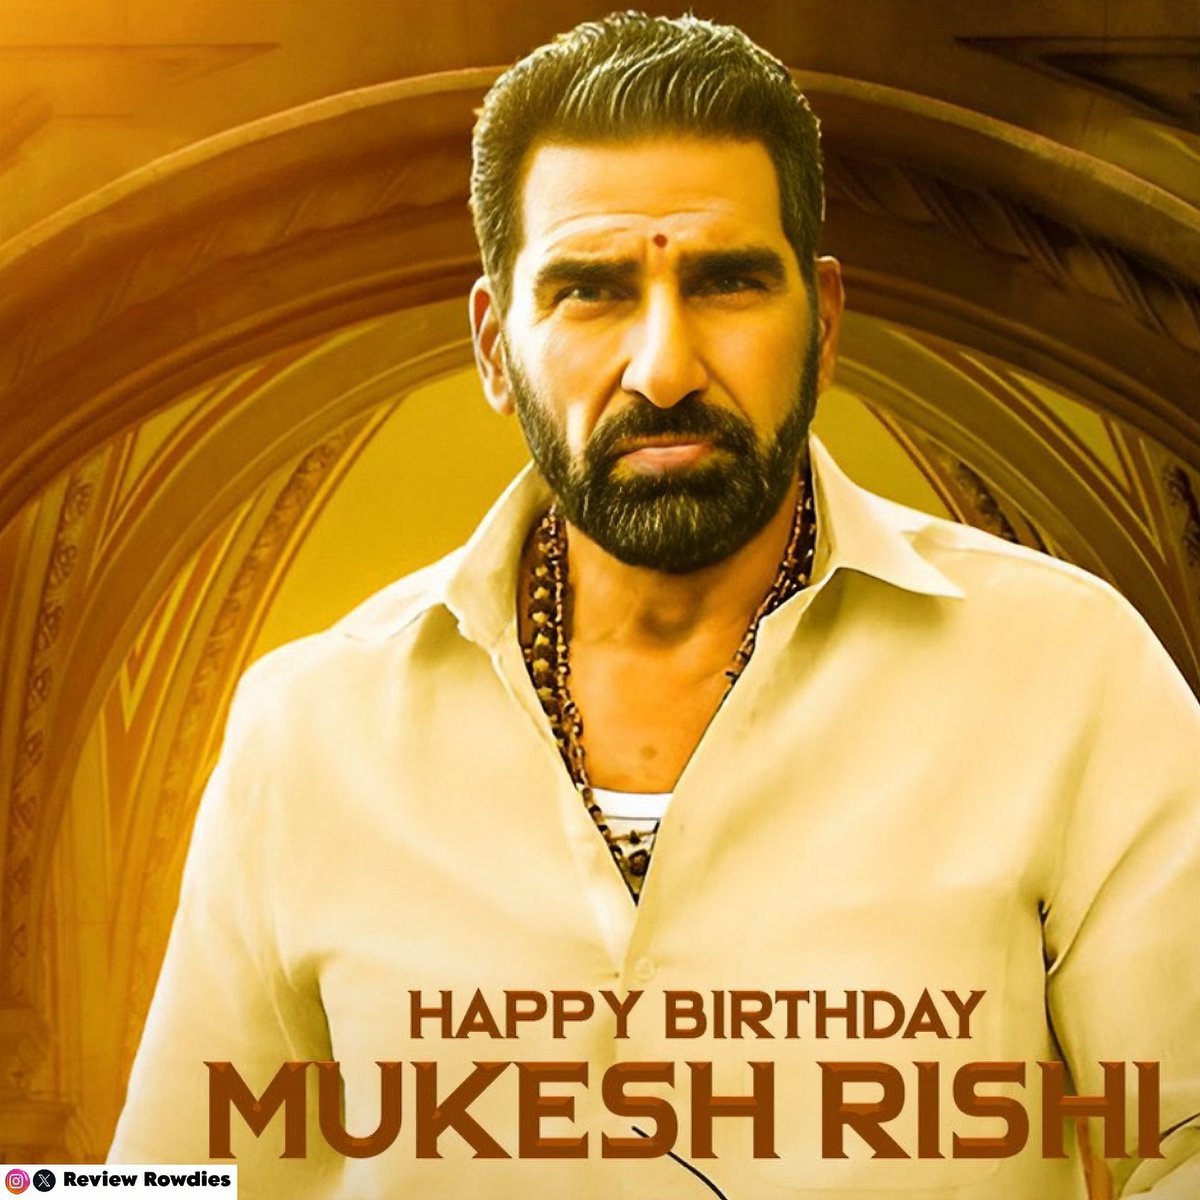 Wishing a very Happy birthday to #MukeshRishi 

#HBDMukeshRishi #HappyBirthdayMukeshRishi #Reviewrowdies